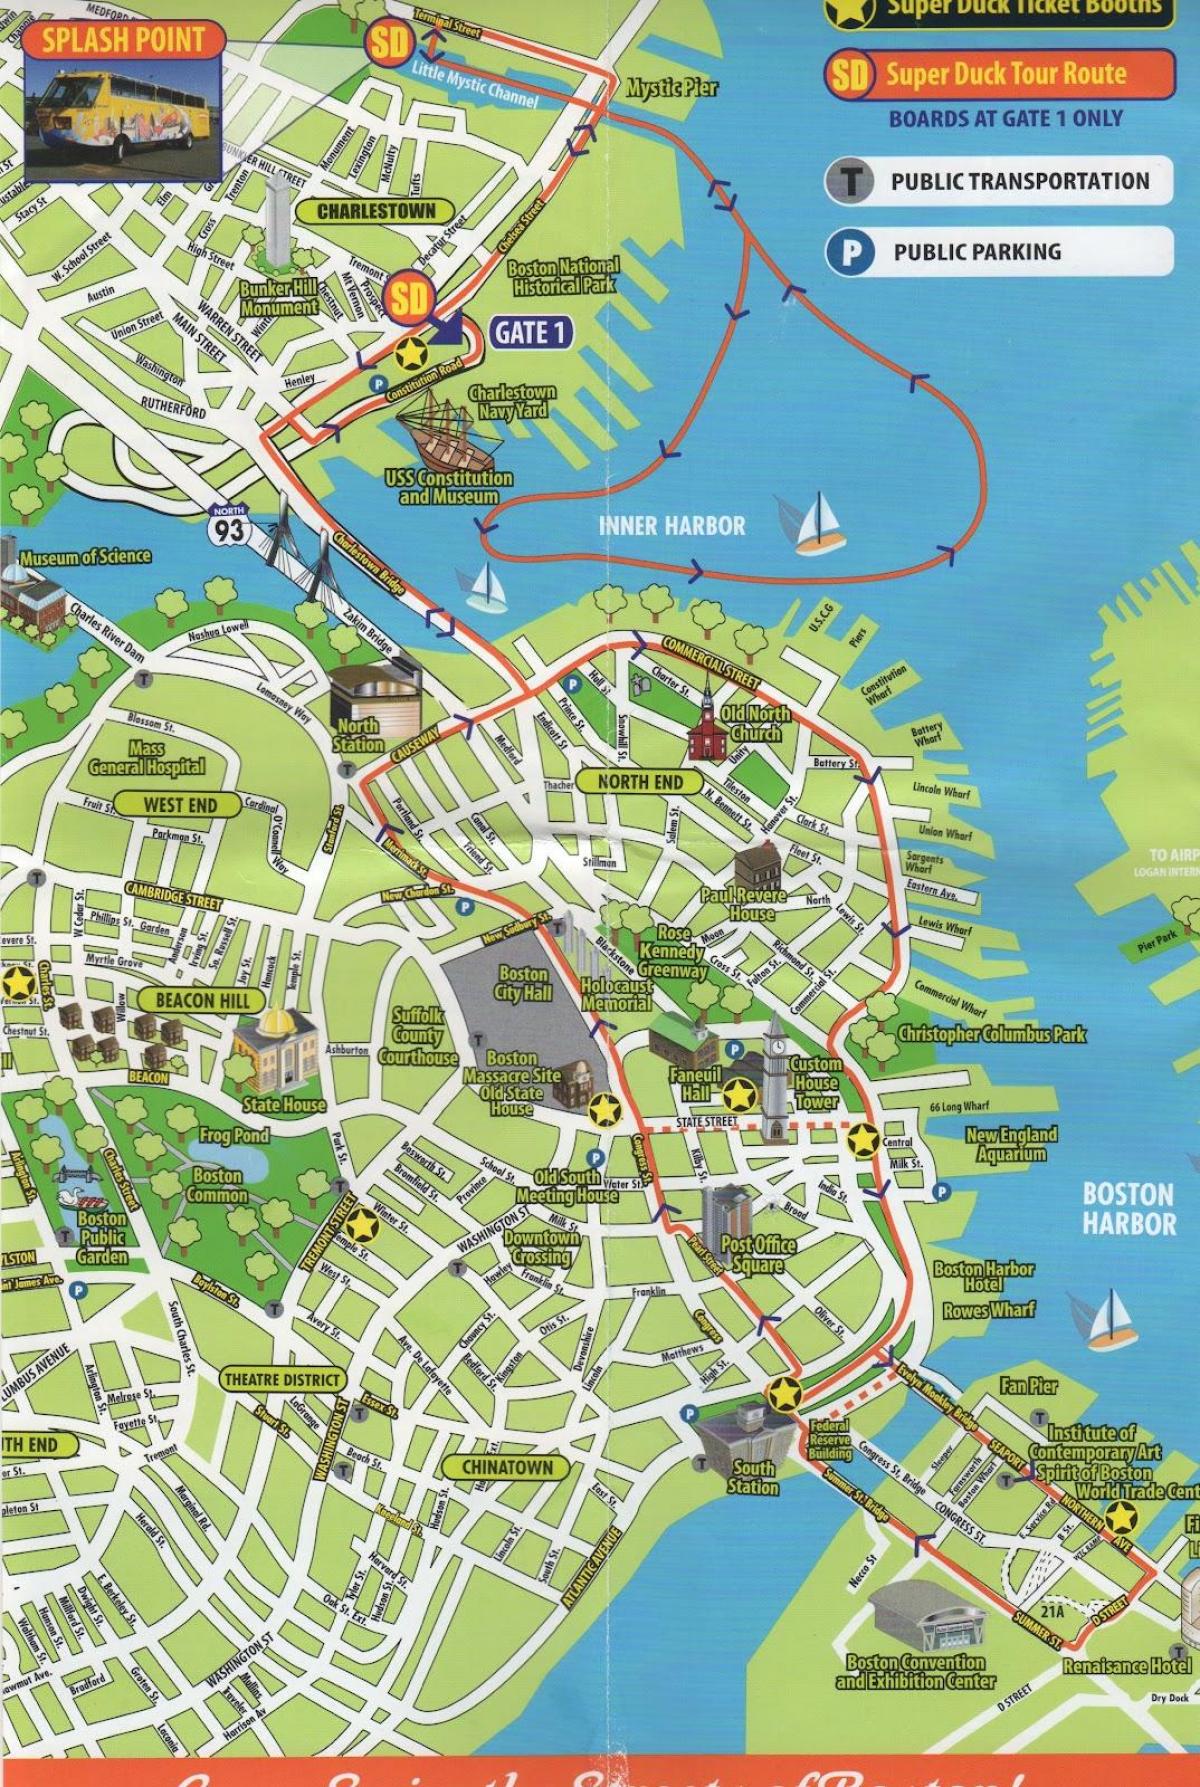 نقشہ کے بوسٹن سیاحت سائٹس کا سفر کے